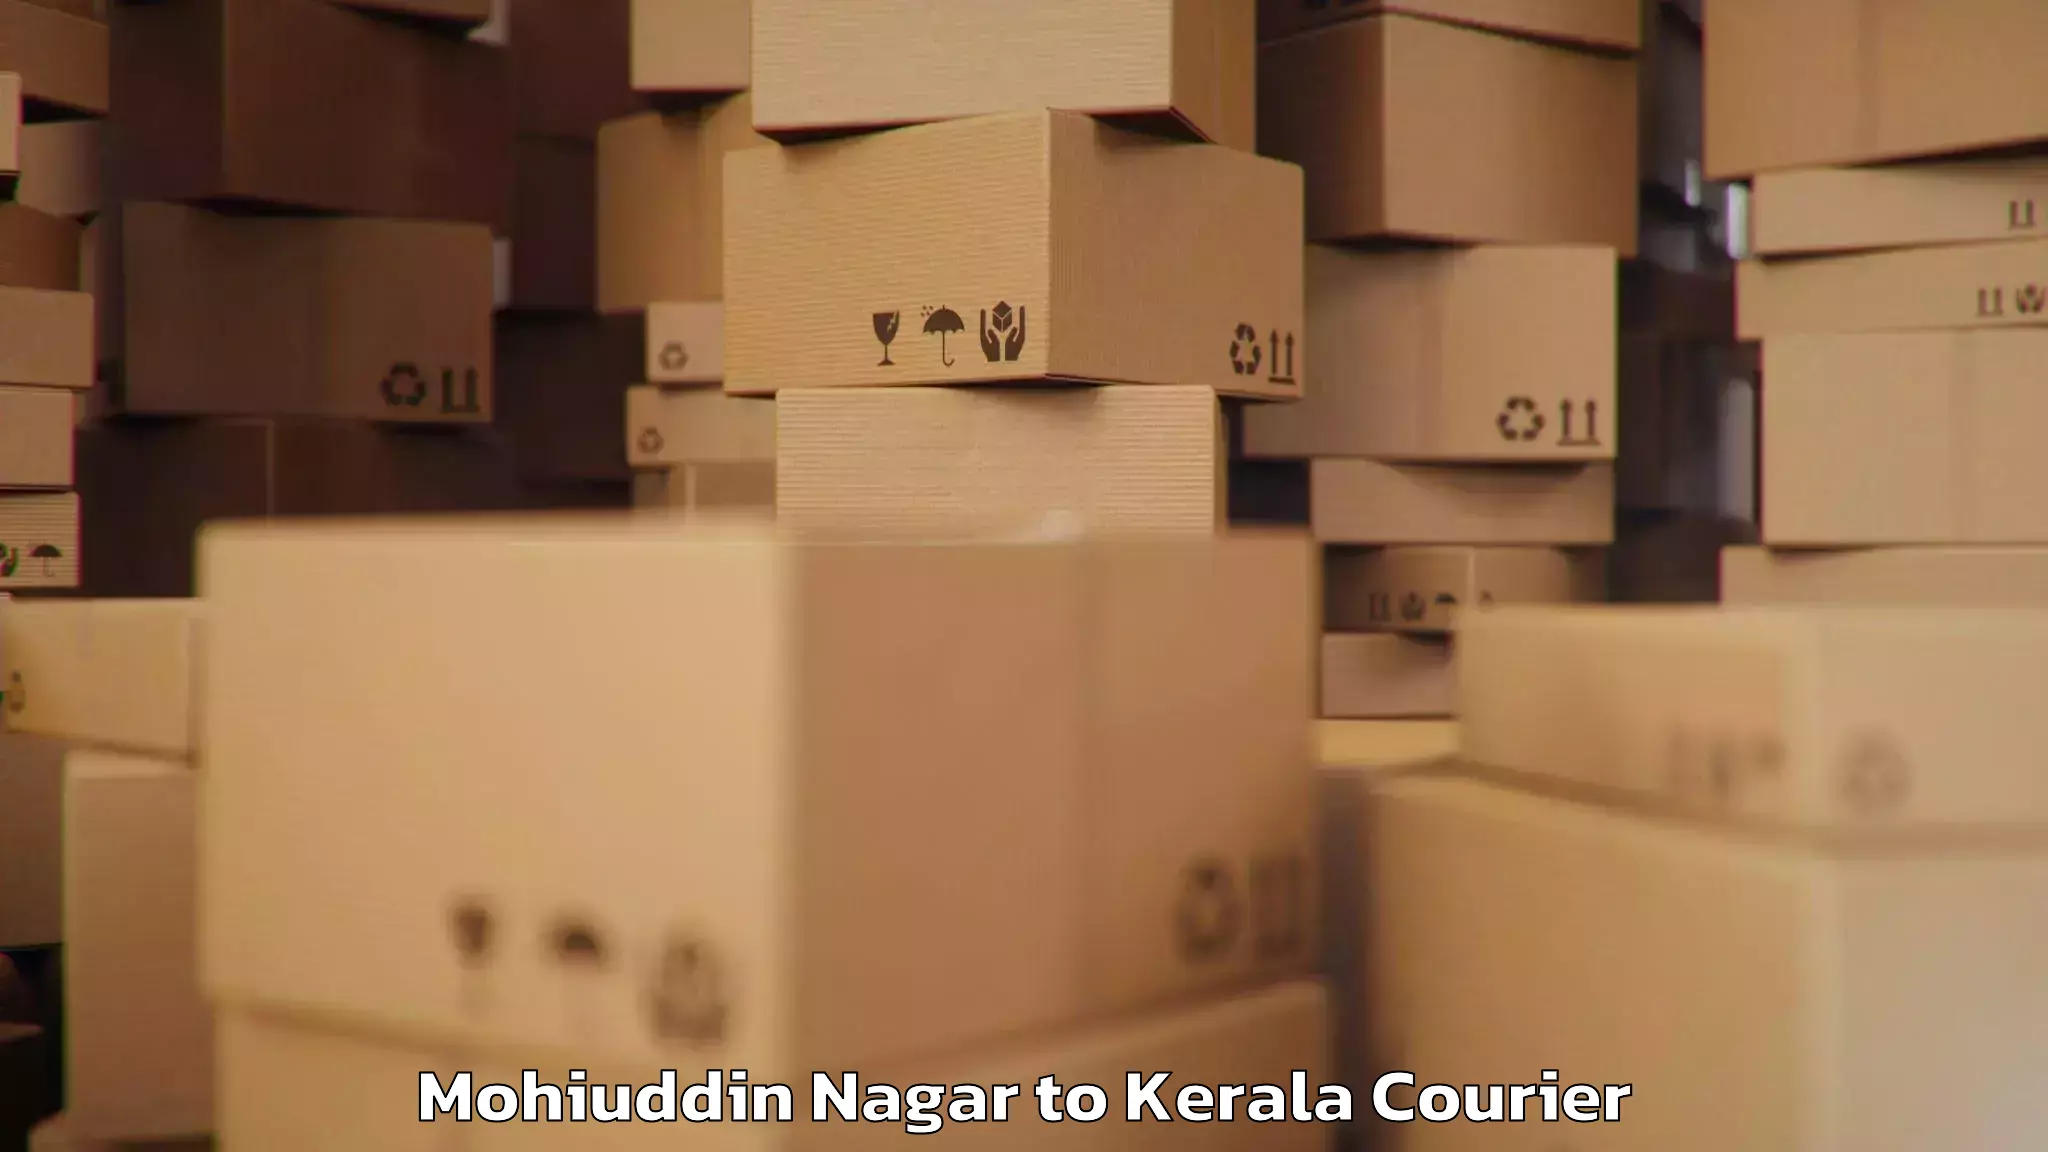 Baggage shipping experience Mohiuddin Nagar to Munnar